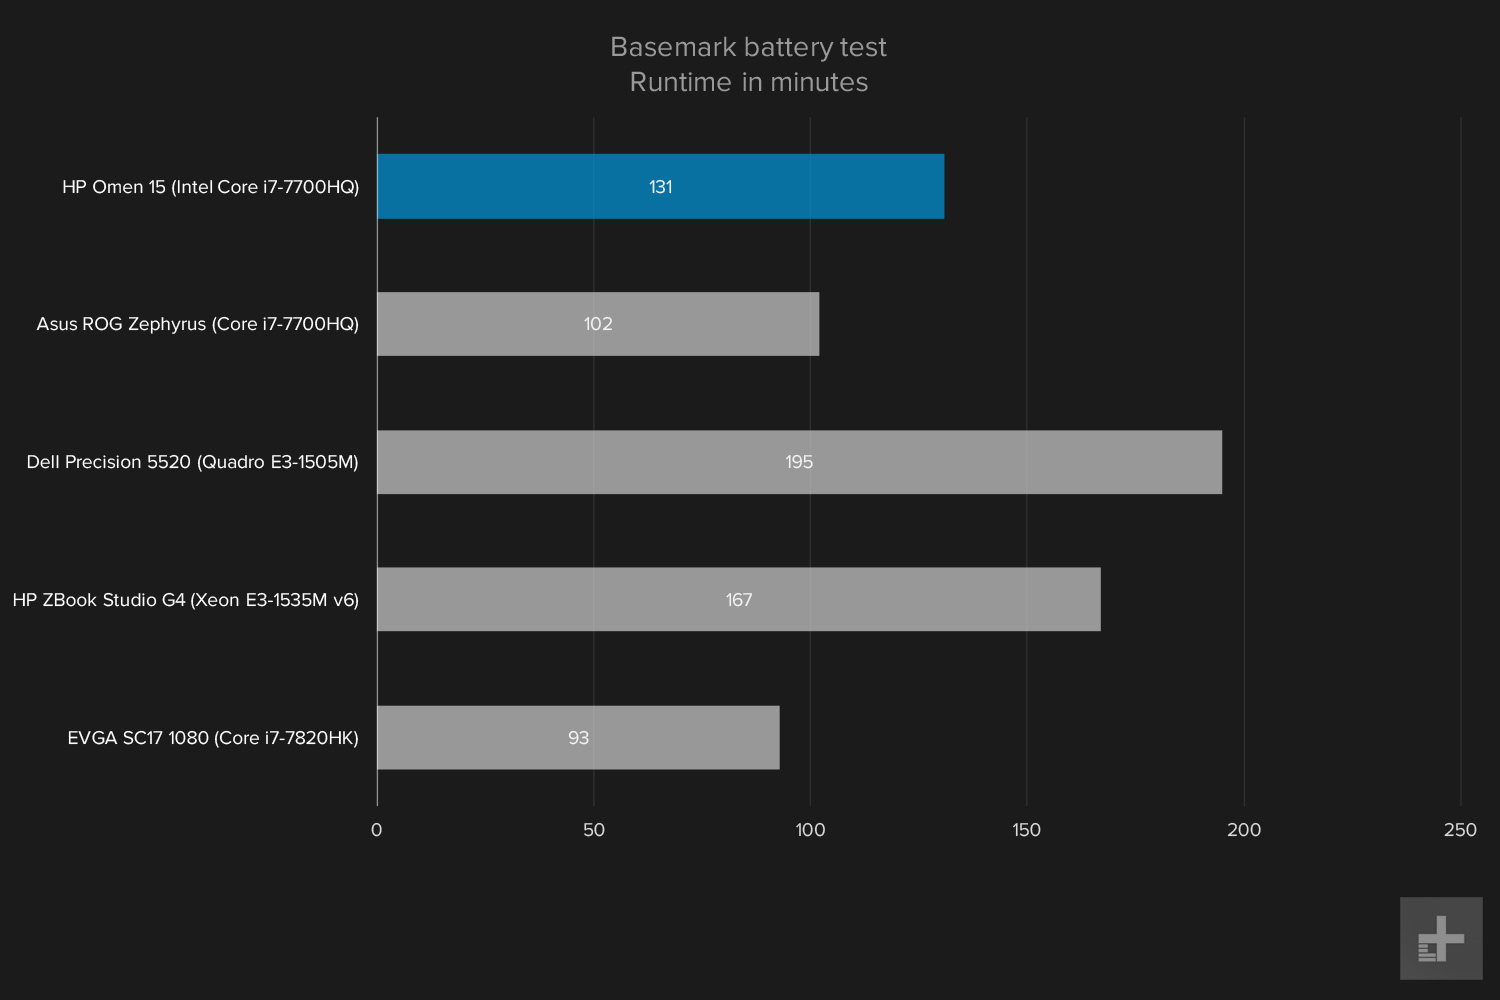 HP Omen benchmark graphs Basemark battery